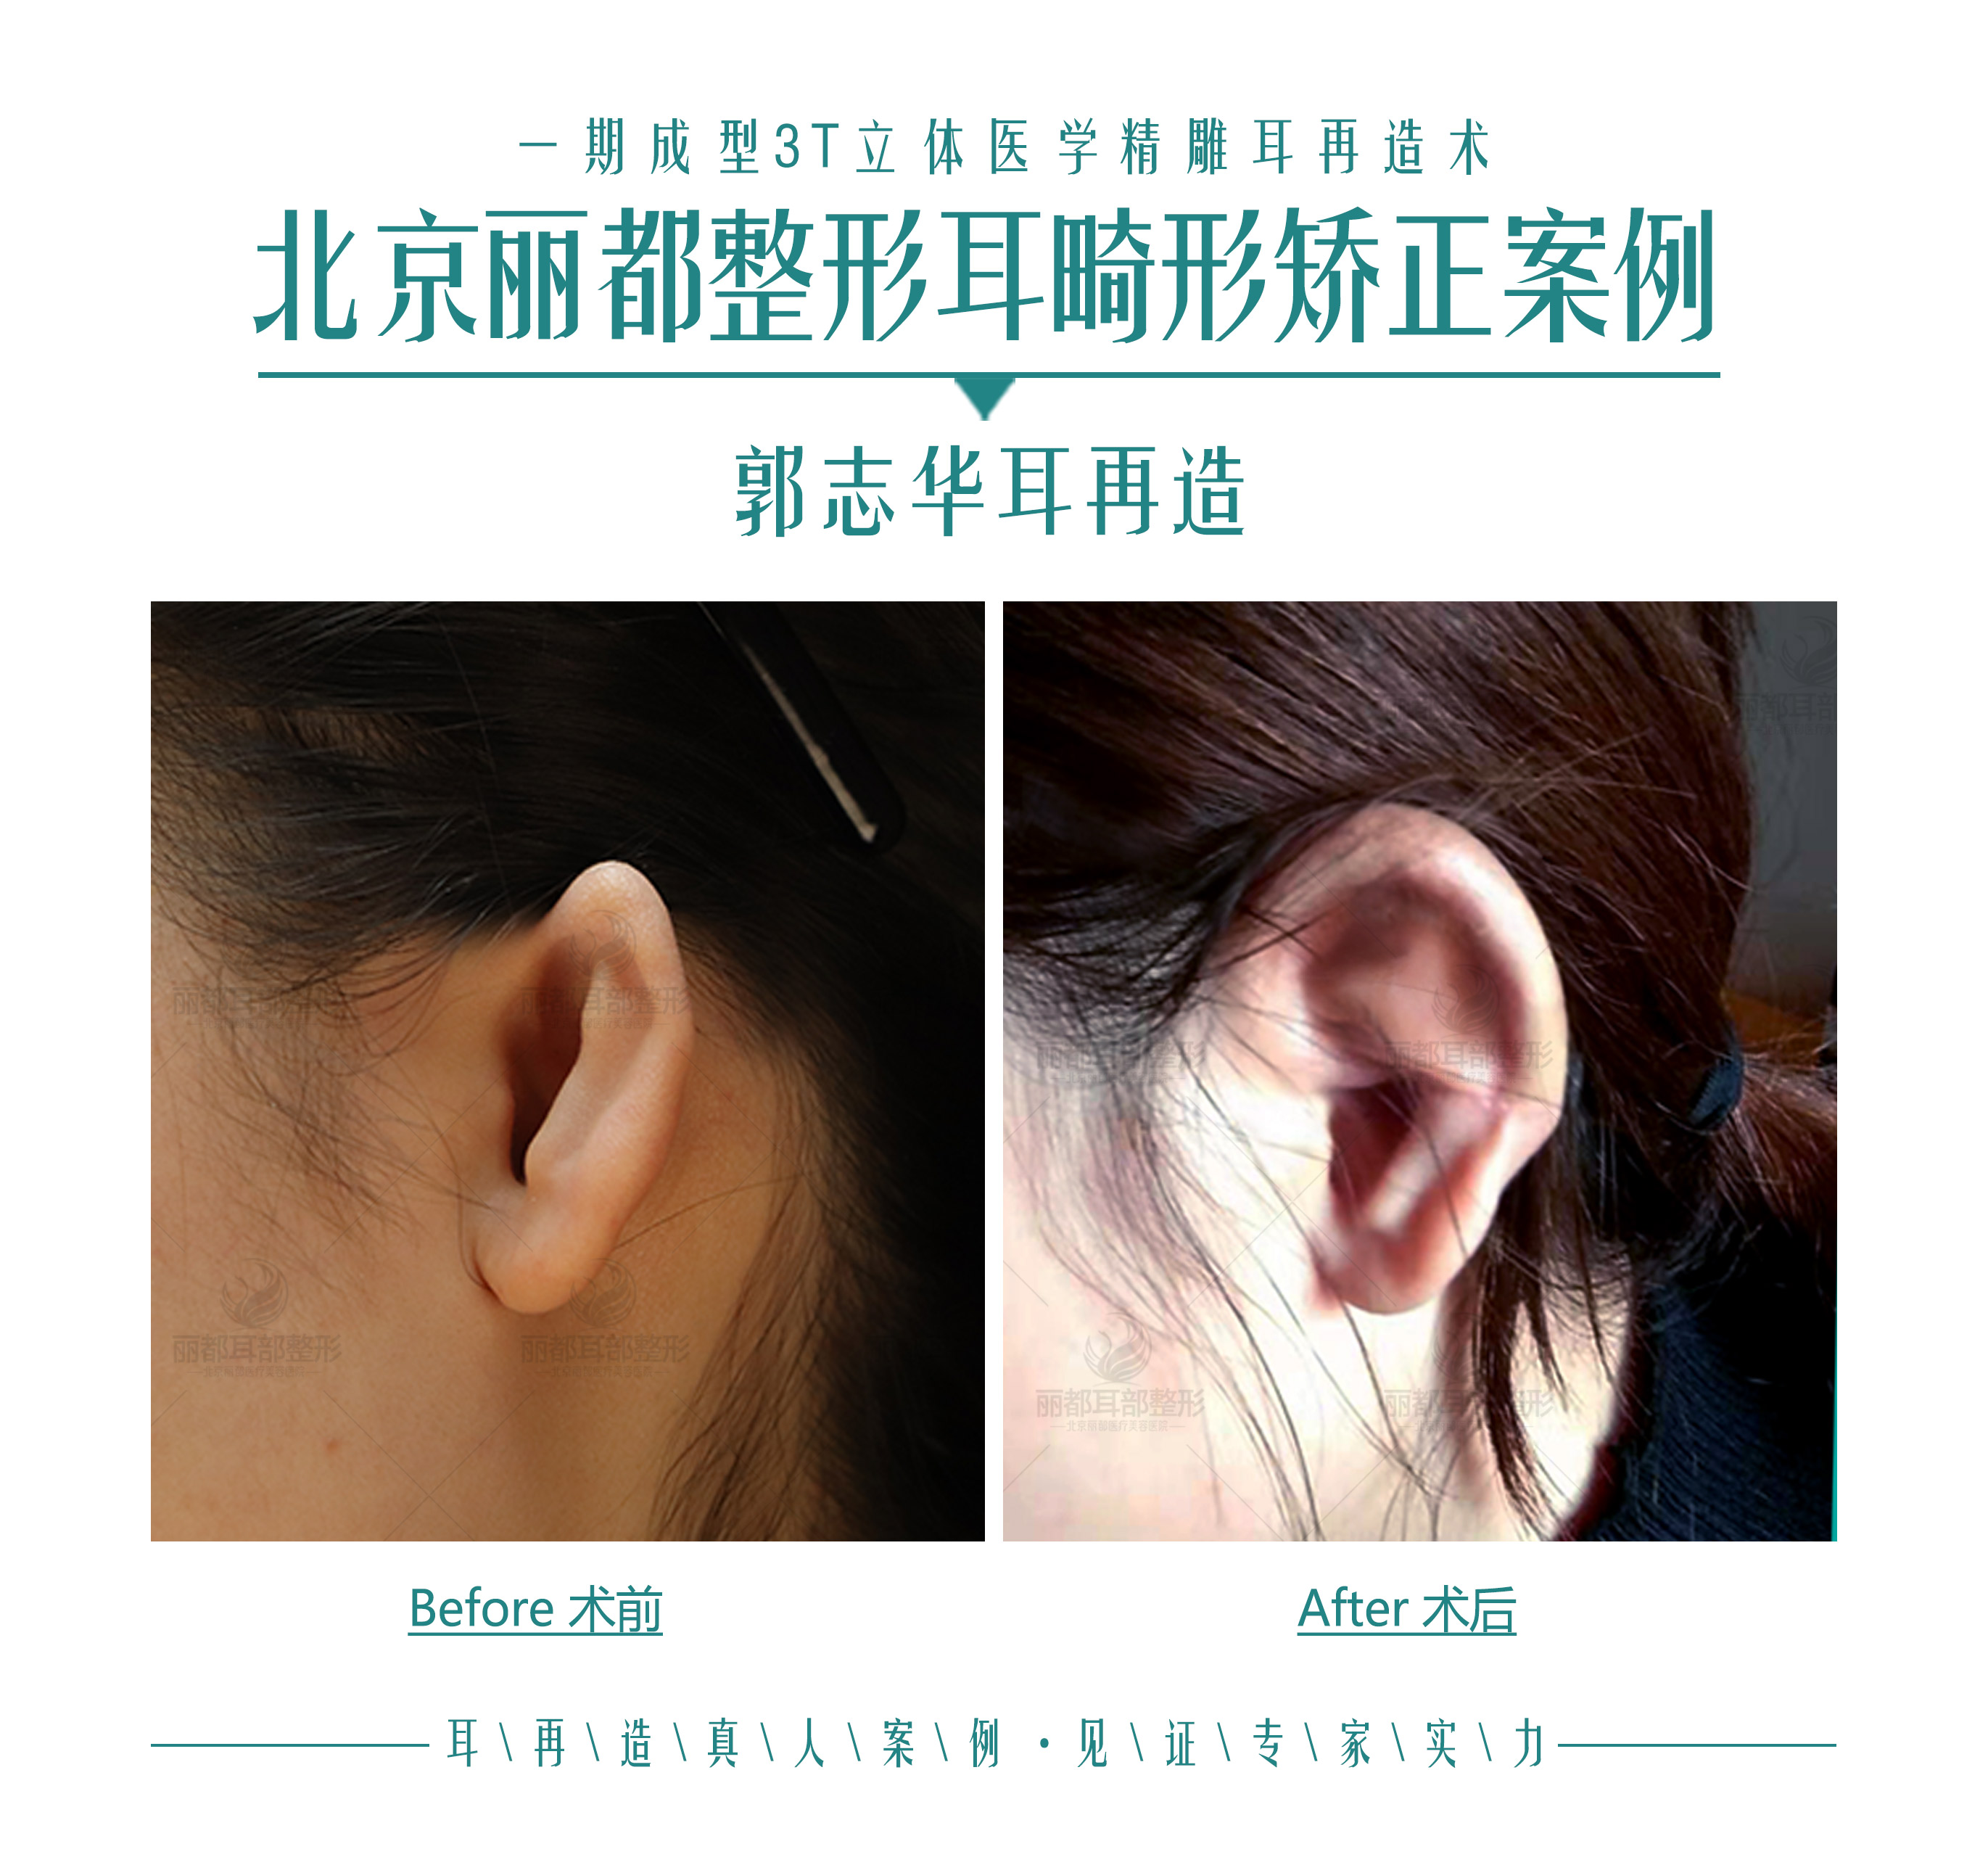 【案例分析】右耳比左耳小，31岁小耳畸形患者忙做手术矫正 - 知乎